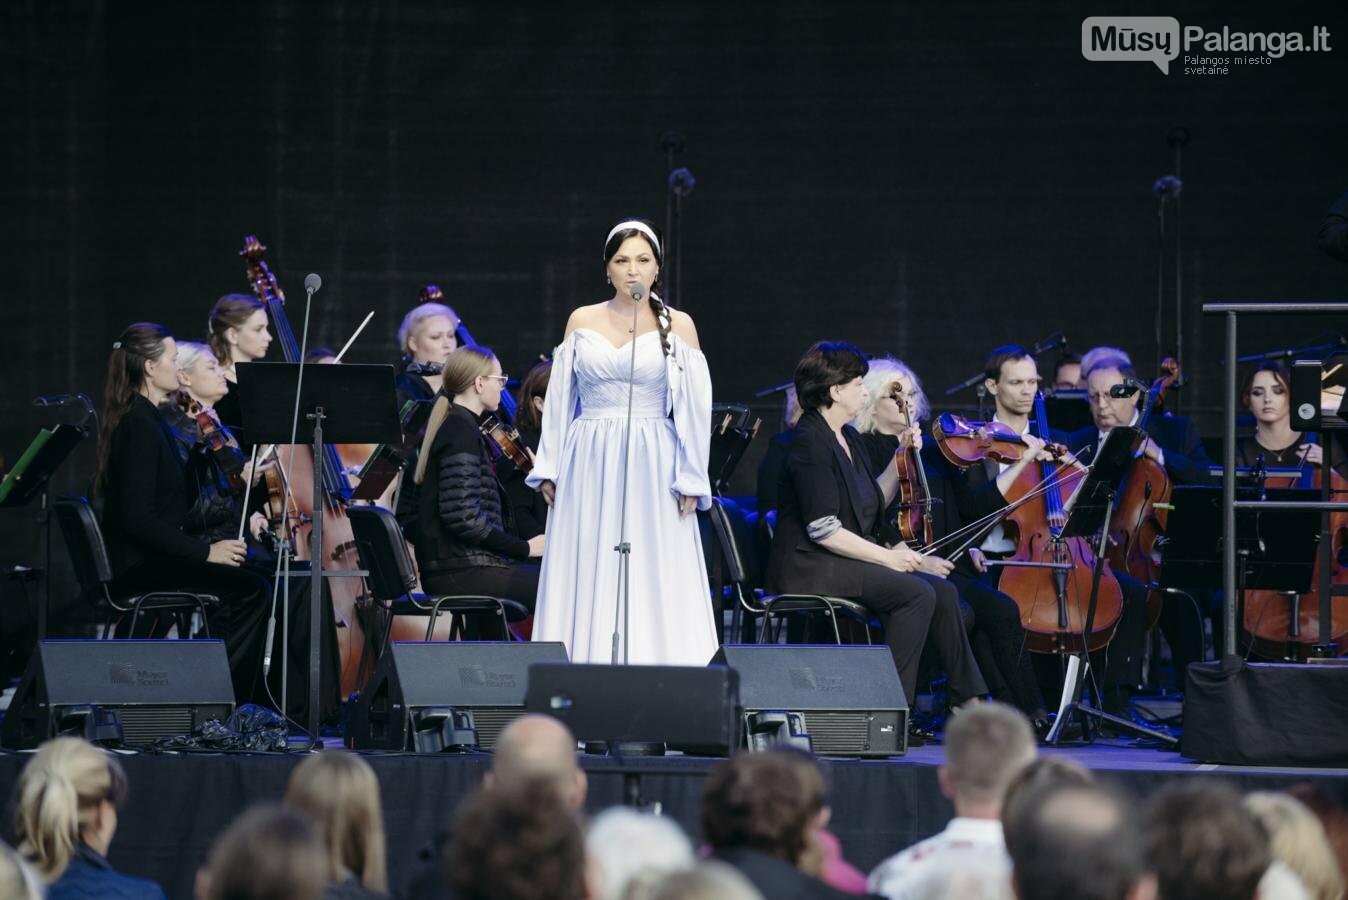 Klaipėdos festivalio pražios koncertas „Karo ir taikos dainos“ -  padėka ir padrąsinimas Ukrainos žmonėms, nuotrauka-26